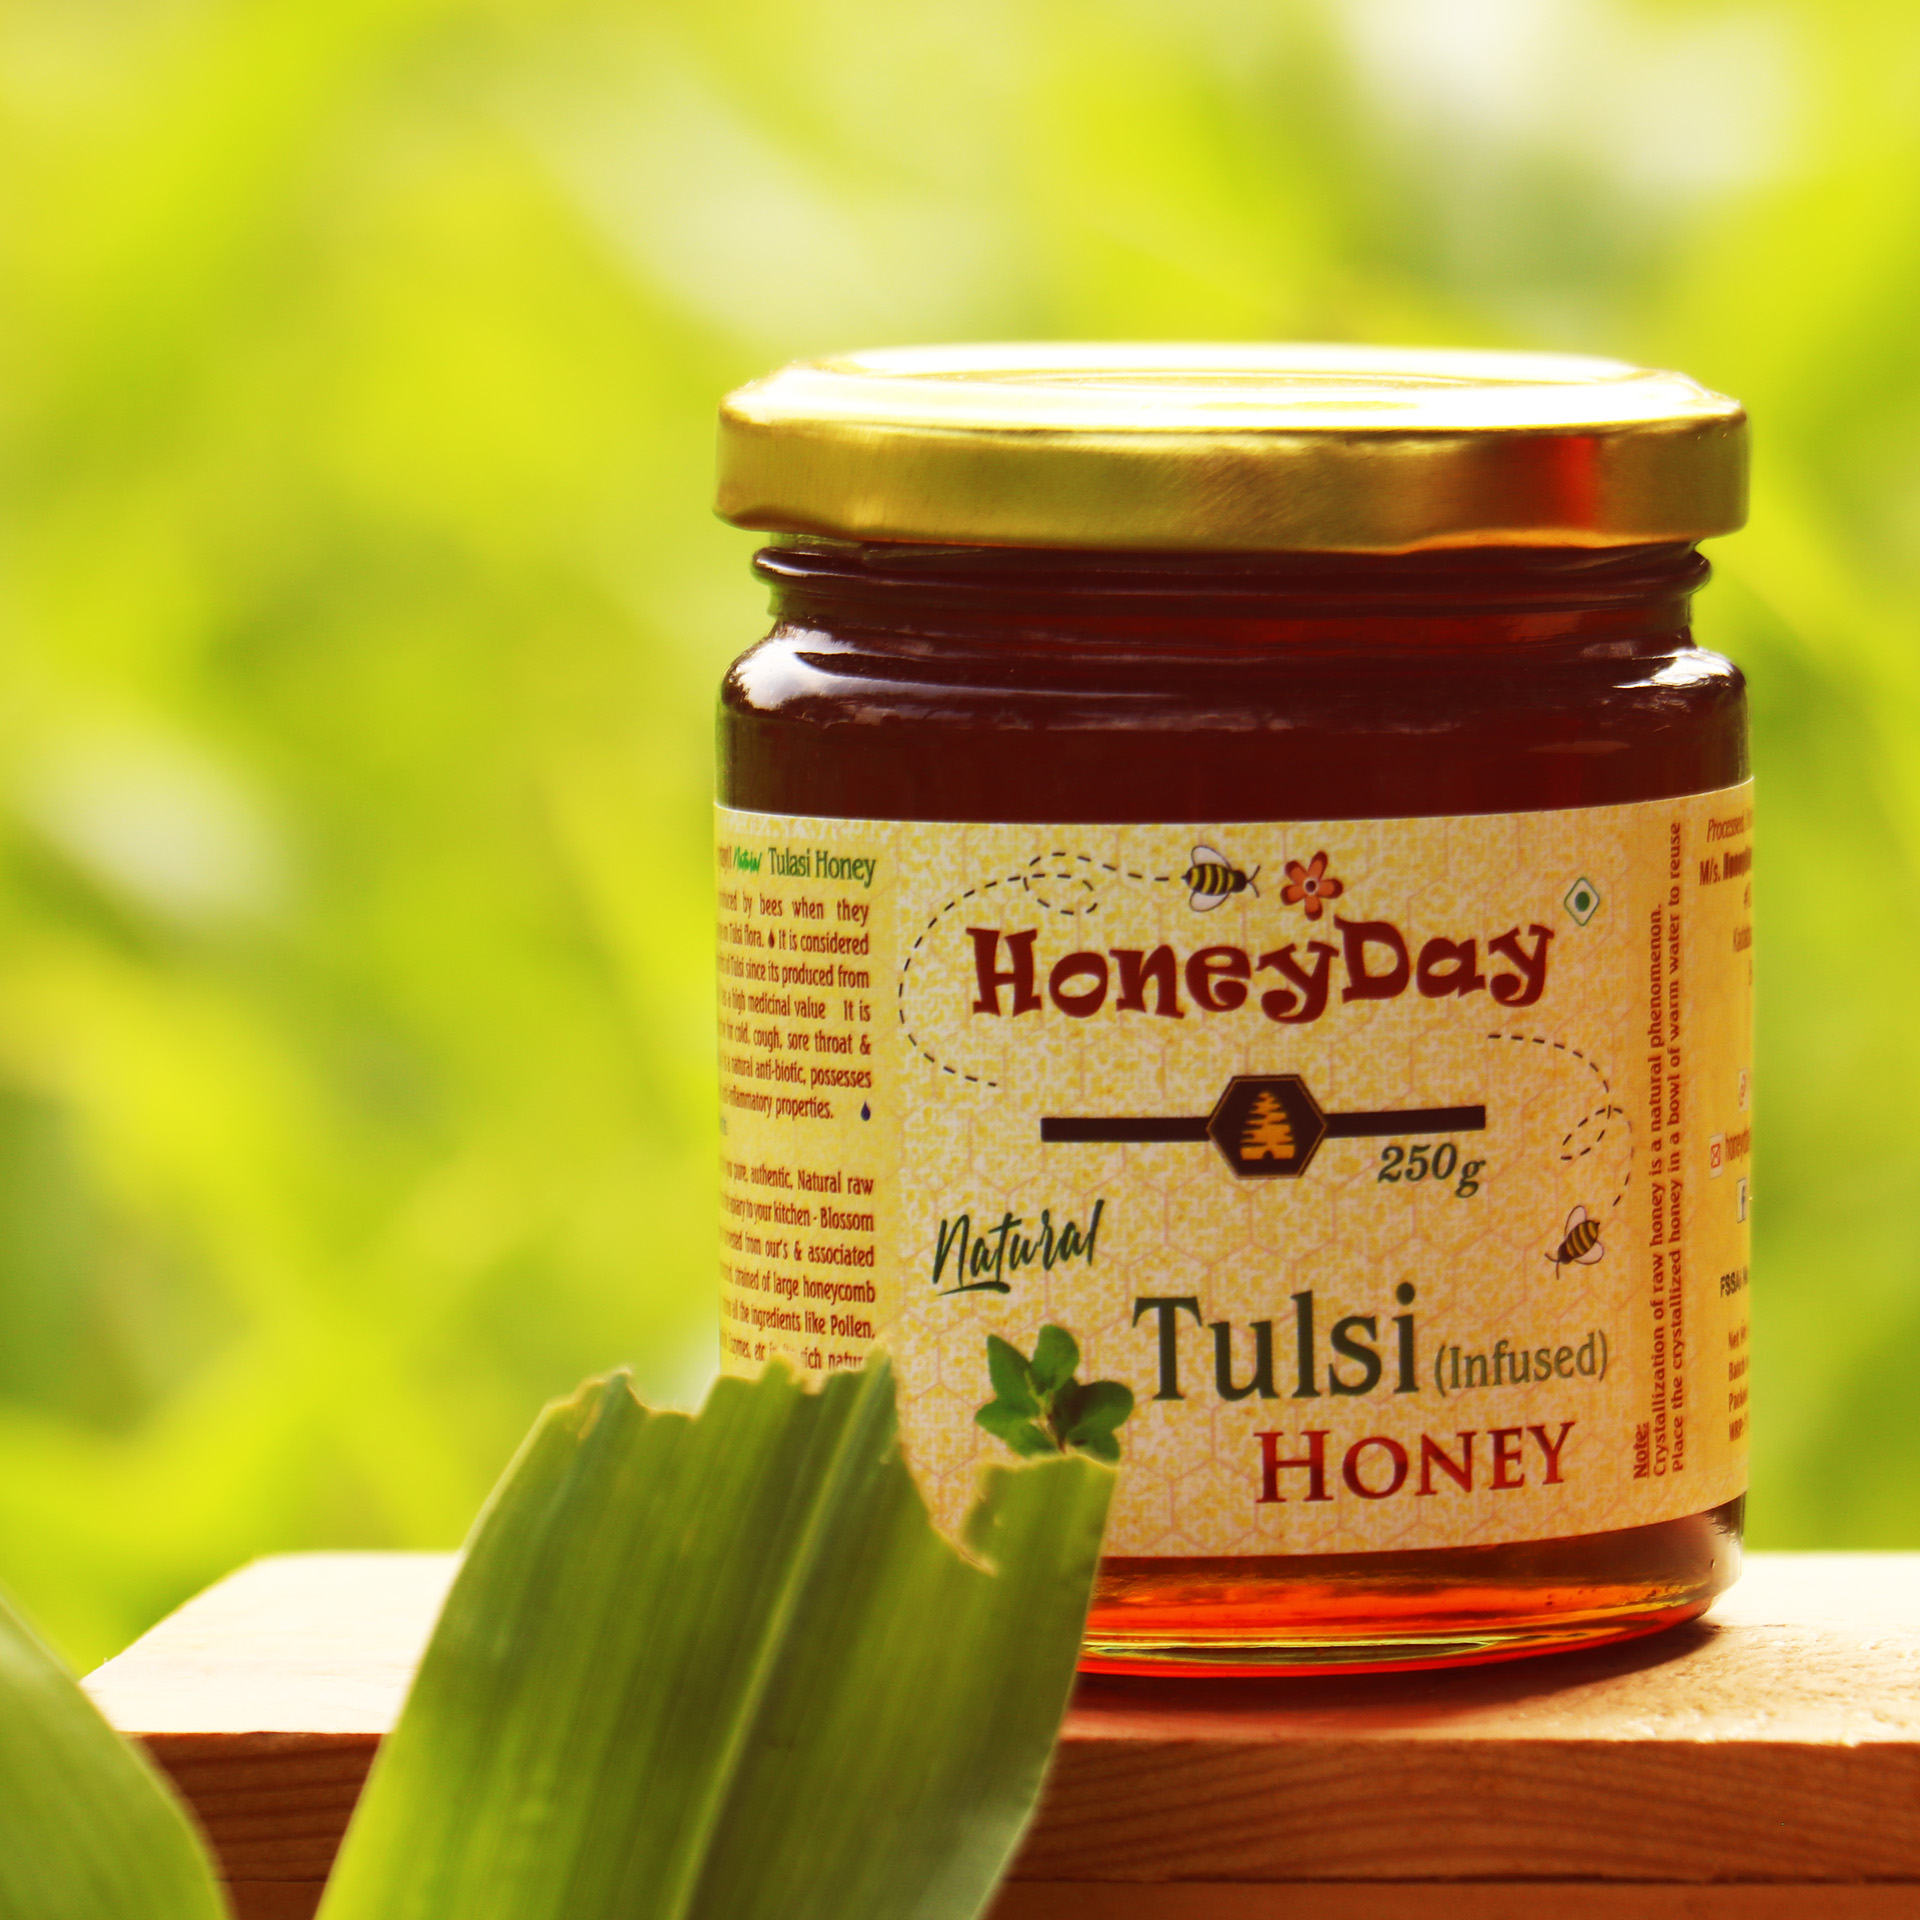 Tulsi (Infused) Honey